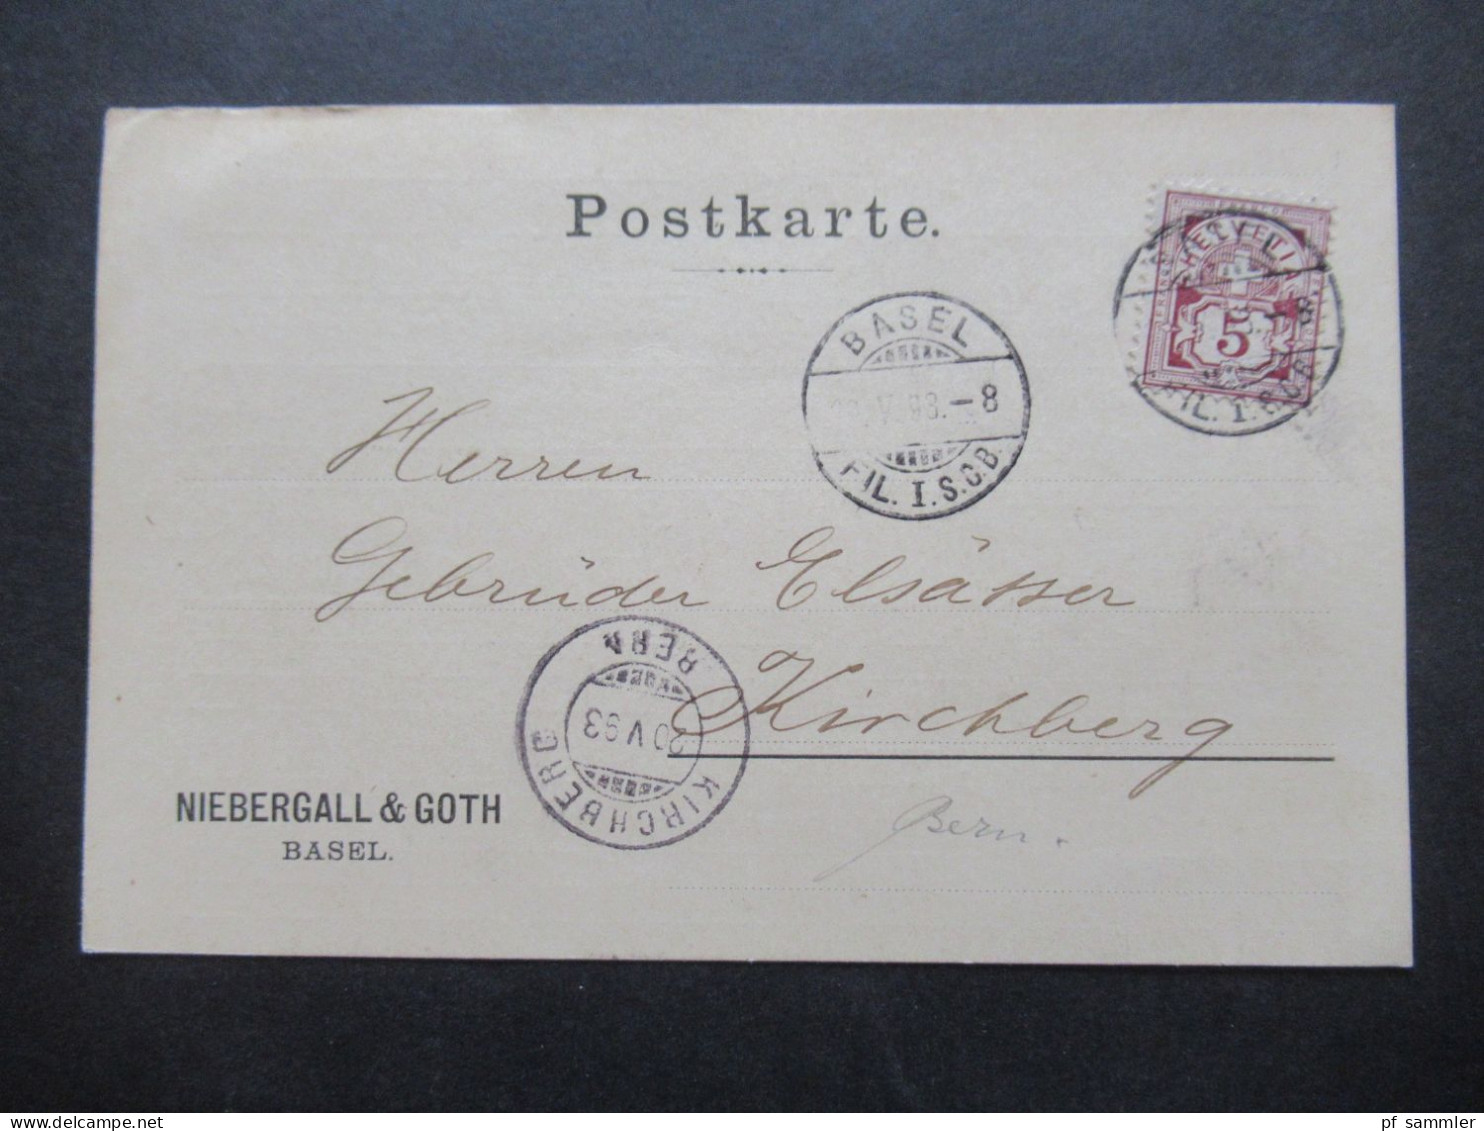 1889 - 1894 Belege Posten Schweiz Firmen PK insgesamt 40 Stück!! Bedruckte Karten / dekorative Karten / klare Stempel